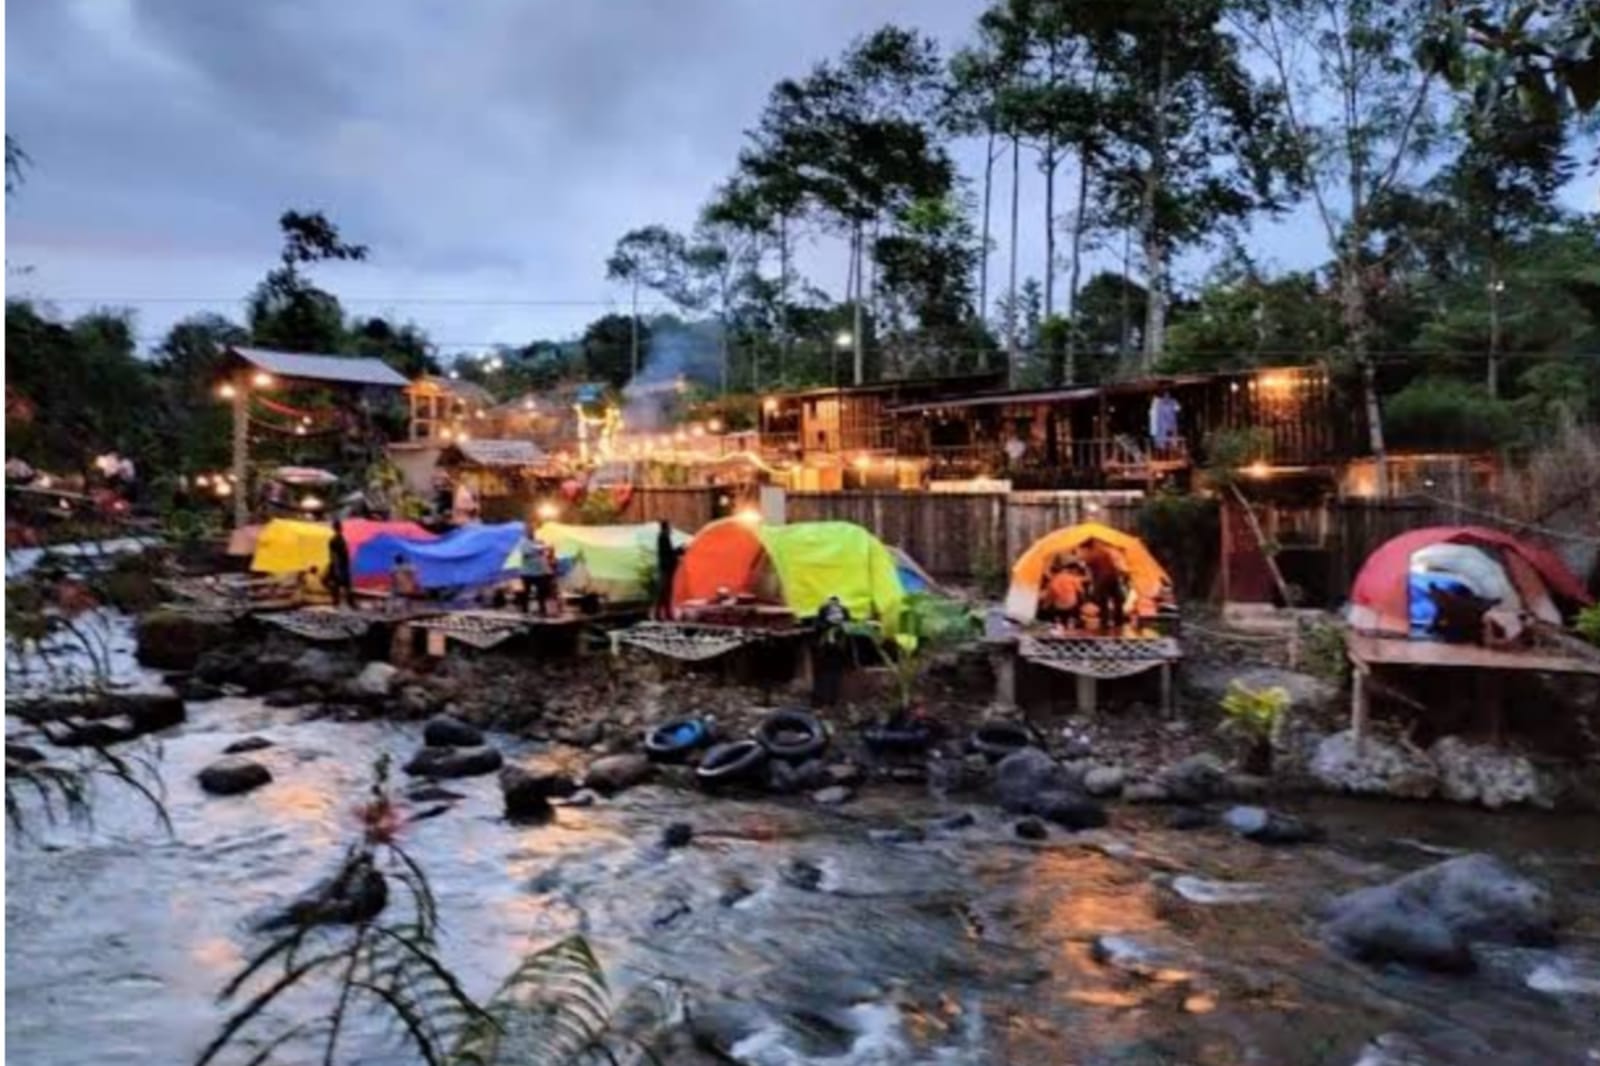 Wisata Dusun Camp Riverside Glamping, Tempat Glamping Terlengkap di Pagaralam Sumatera Selatan